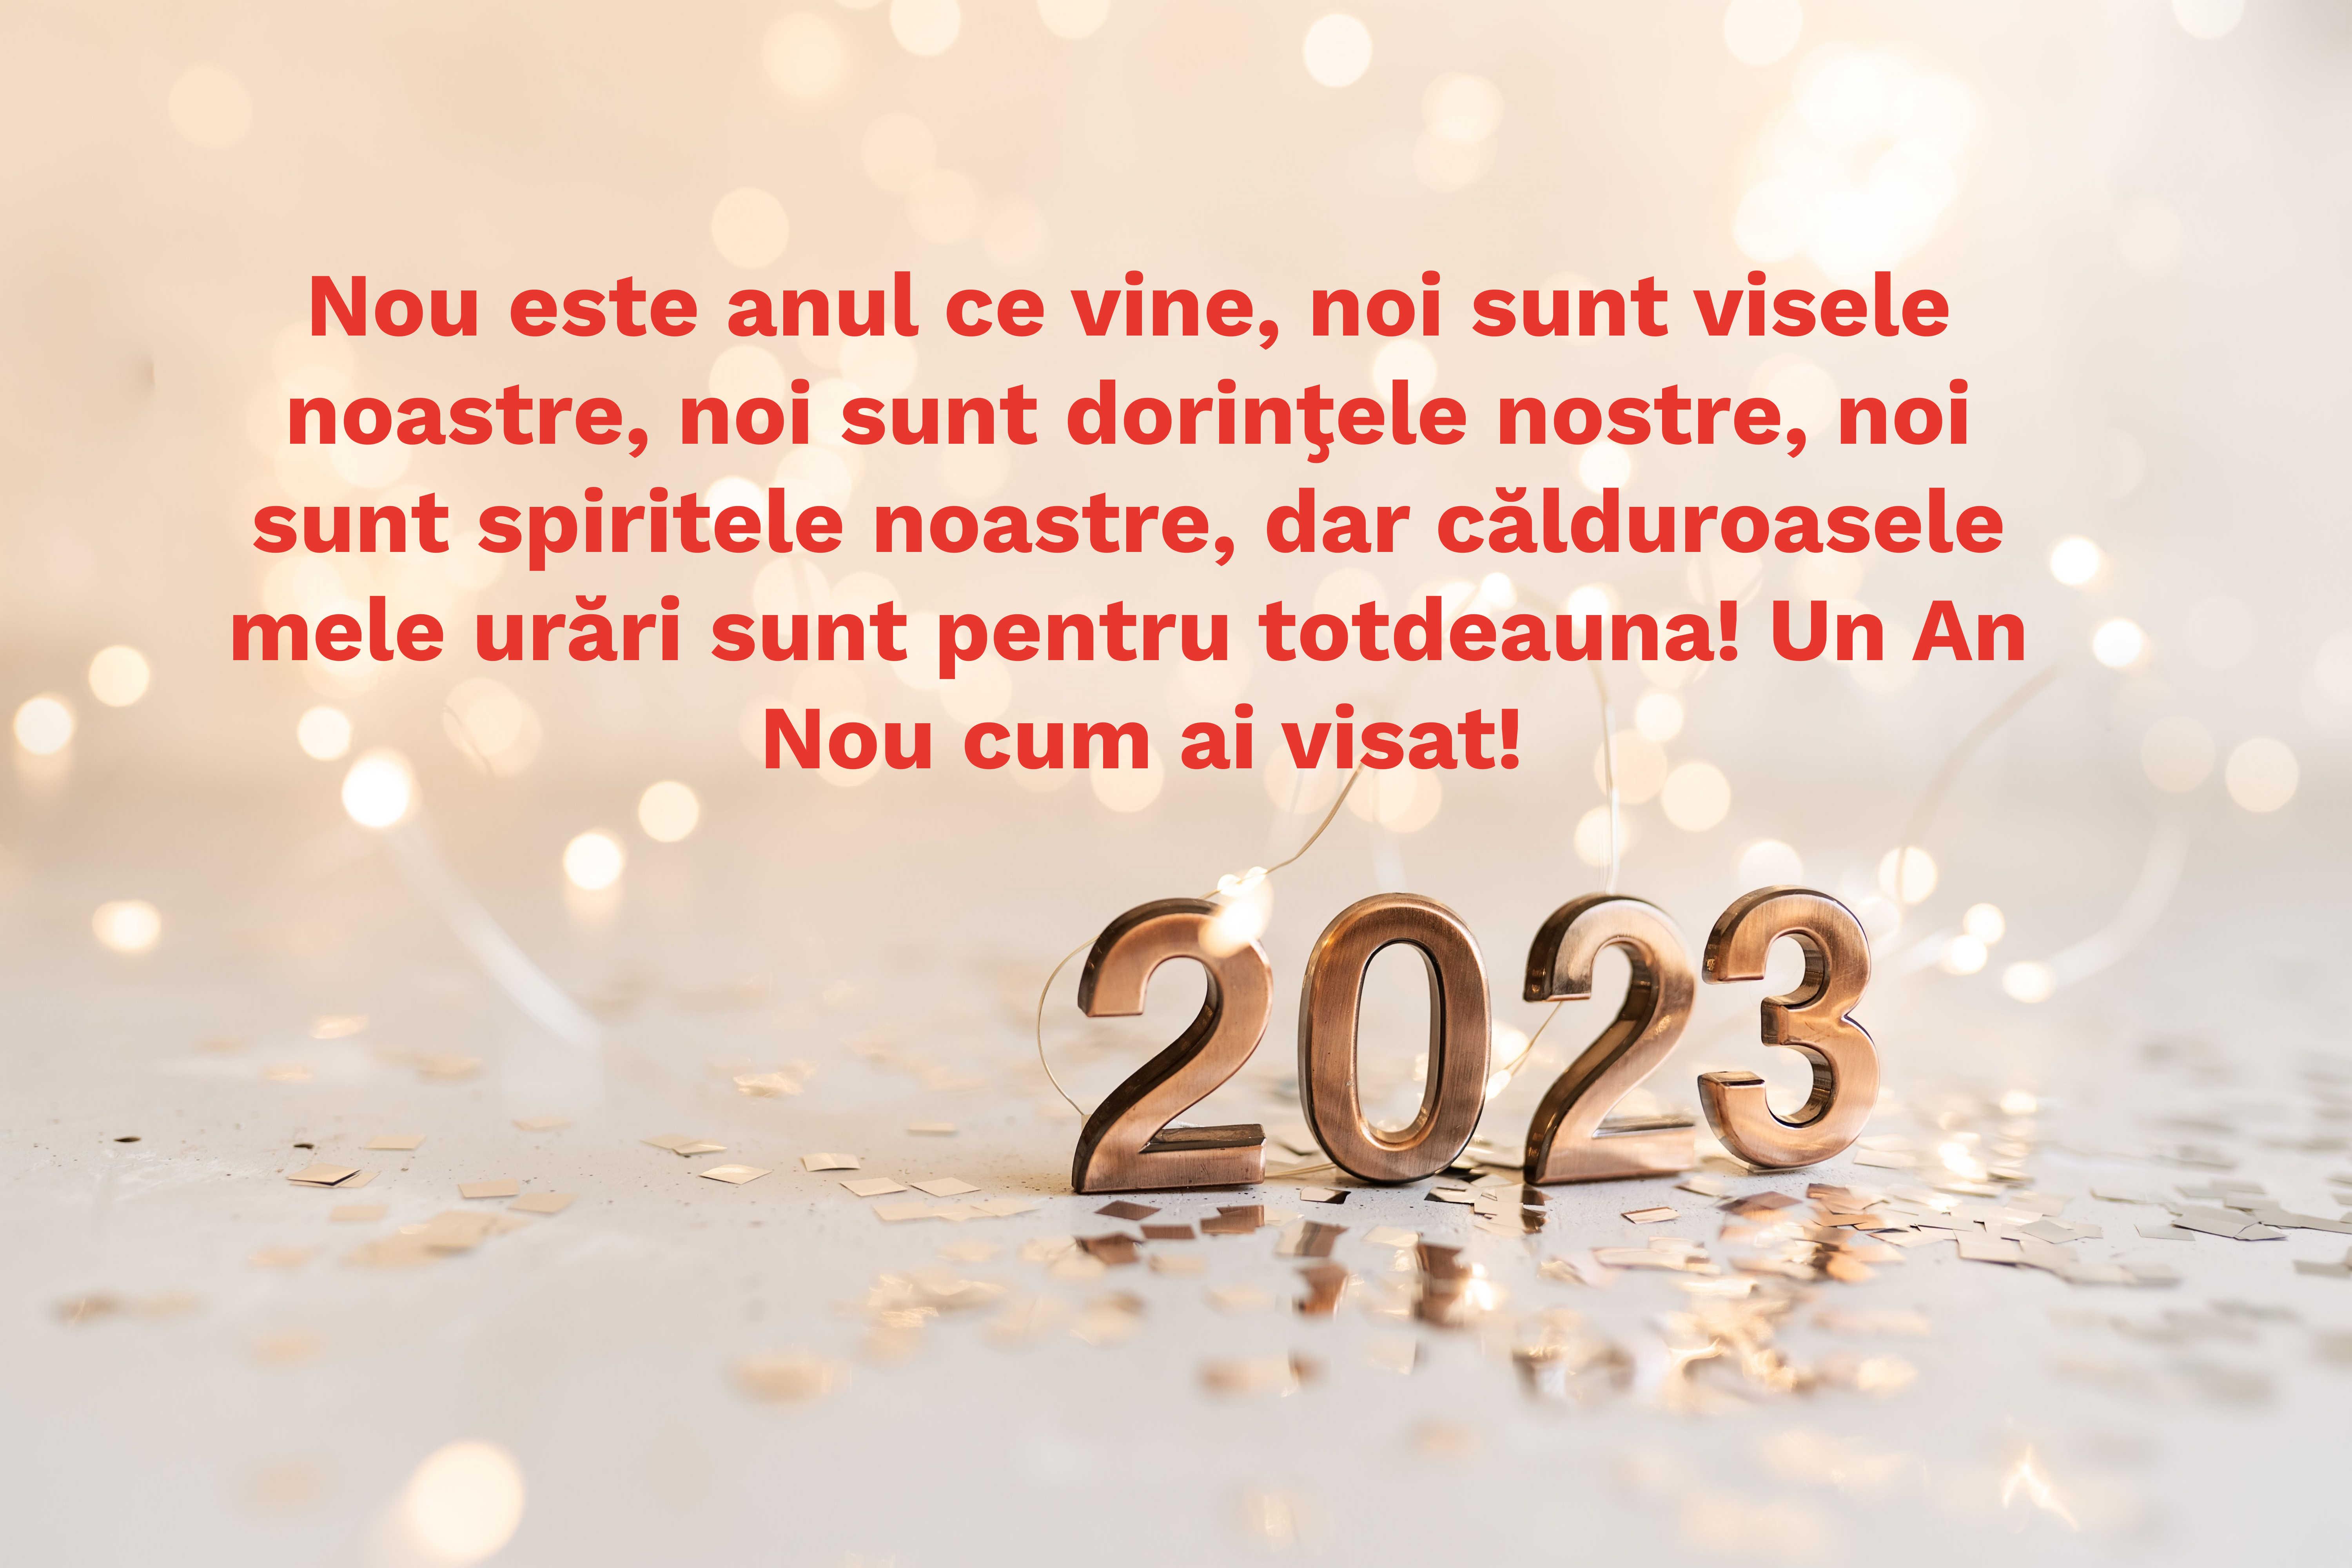 felicitare aniversara de anul nou 2023 cu mesaj si urare de revelion